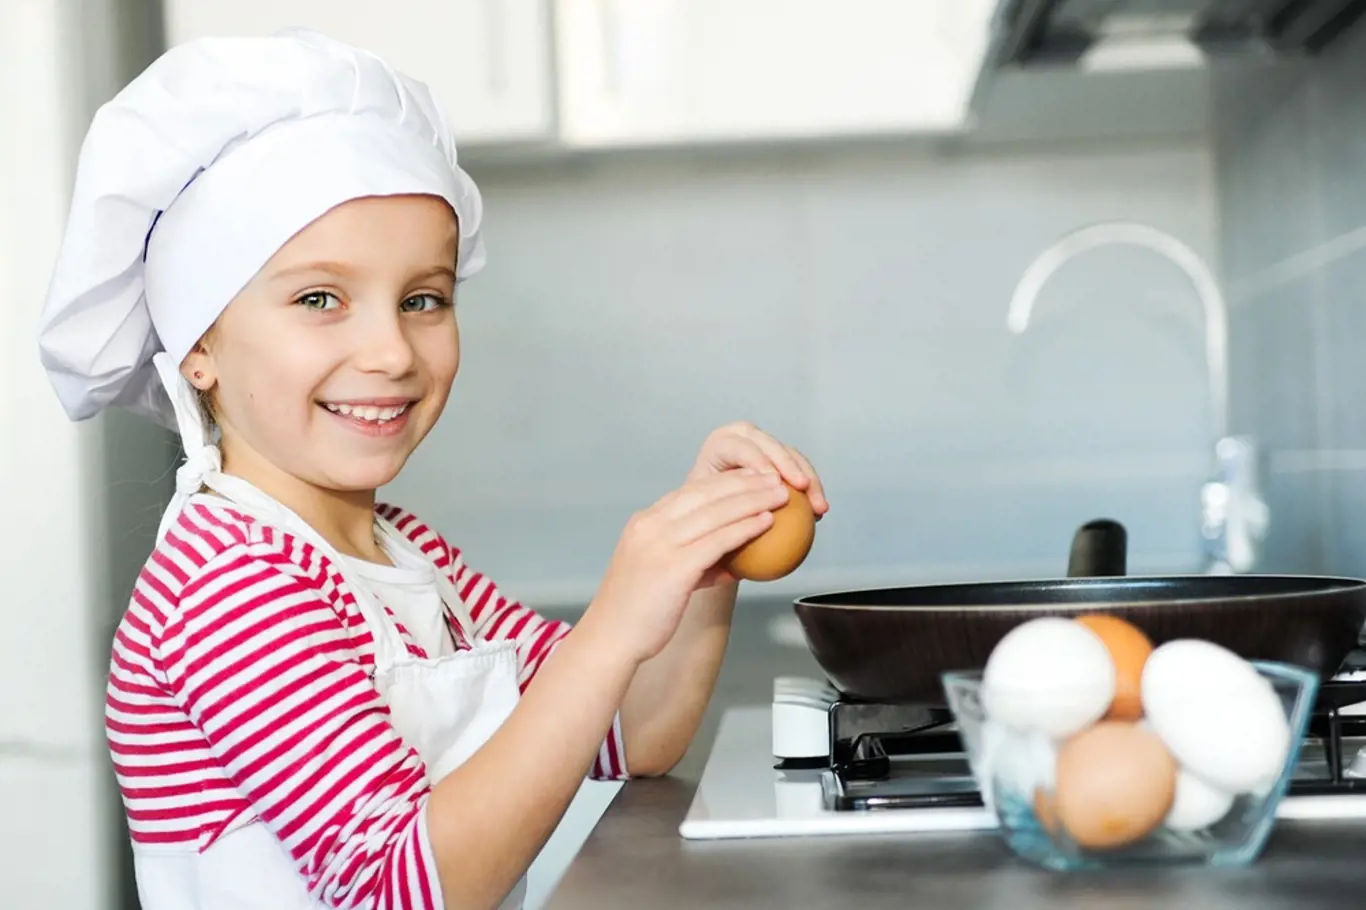 Než začnete vejce v kuchyni používat, udělejte si jednoduchý test čerstvosti